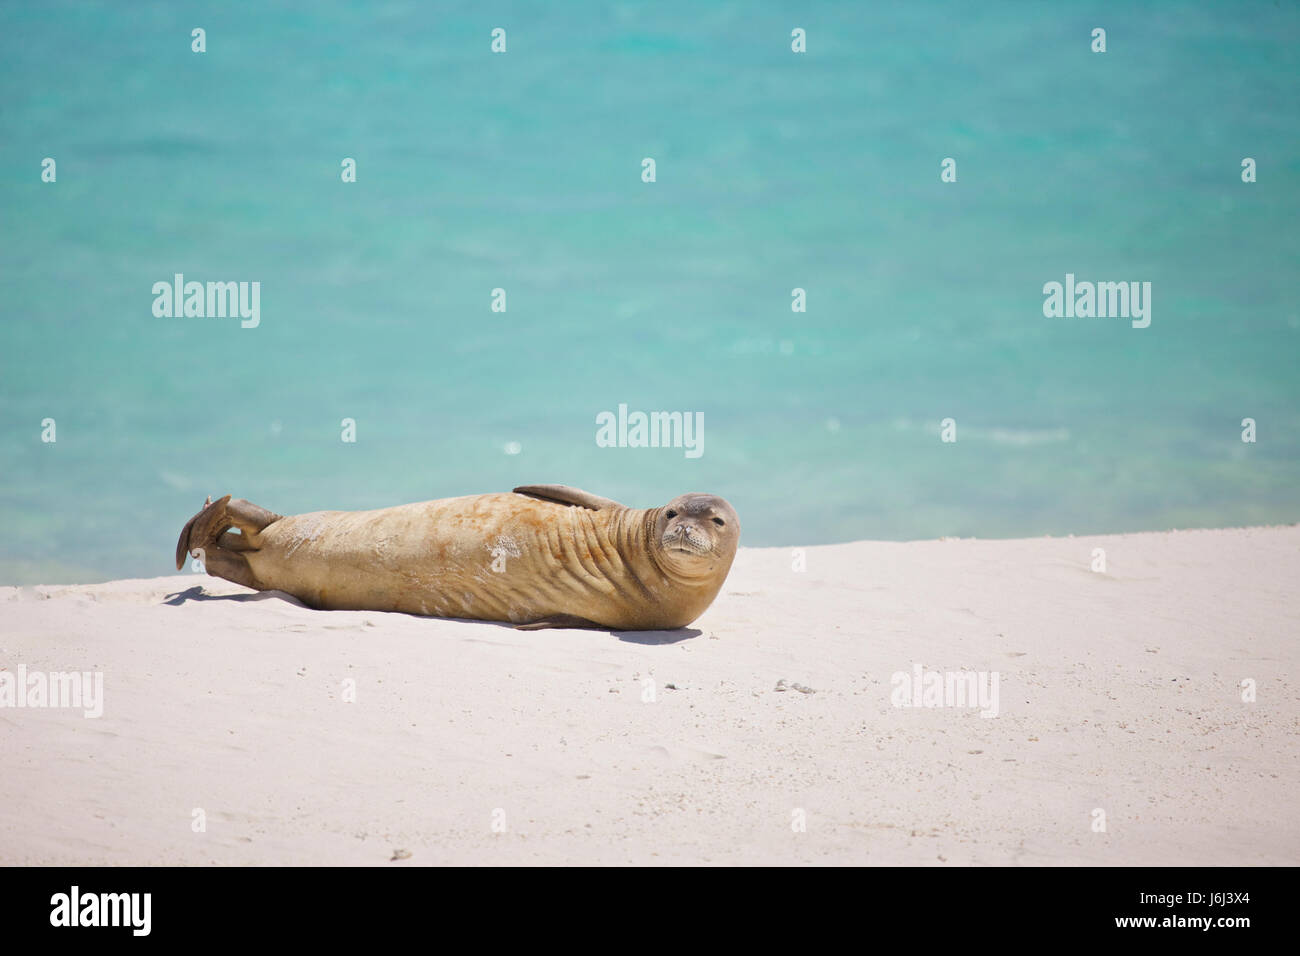 Hawaiian monk seal, Neomonachus schauinslandi, Midway, Midway Atoll Stock Photo